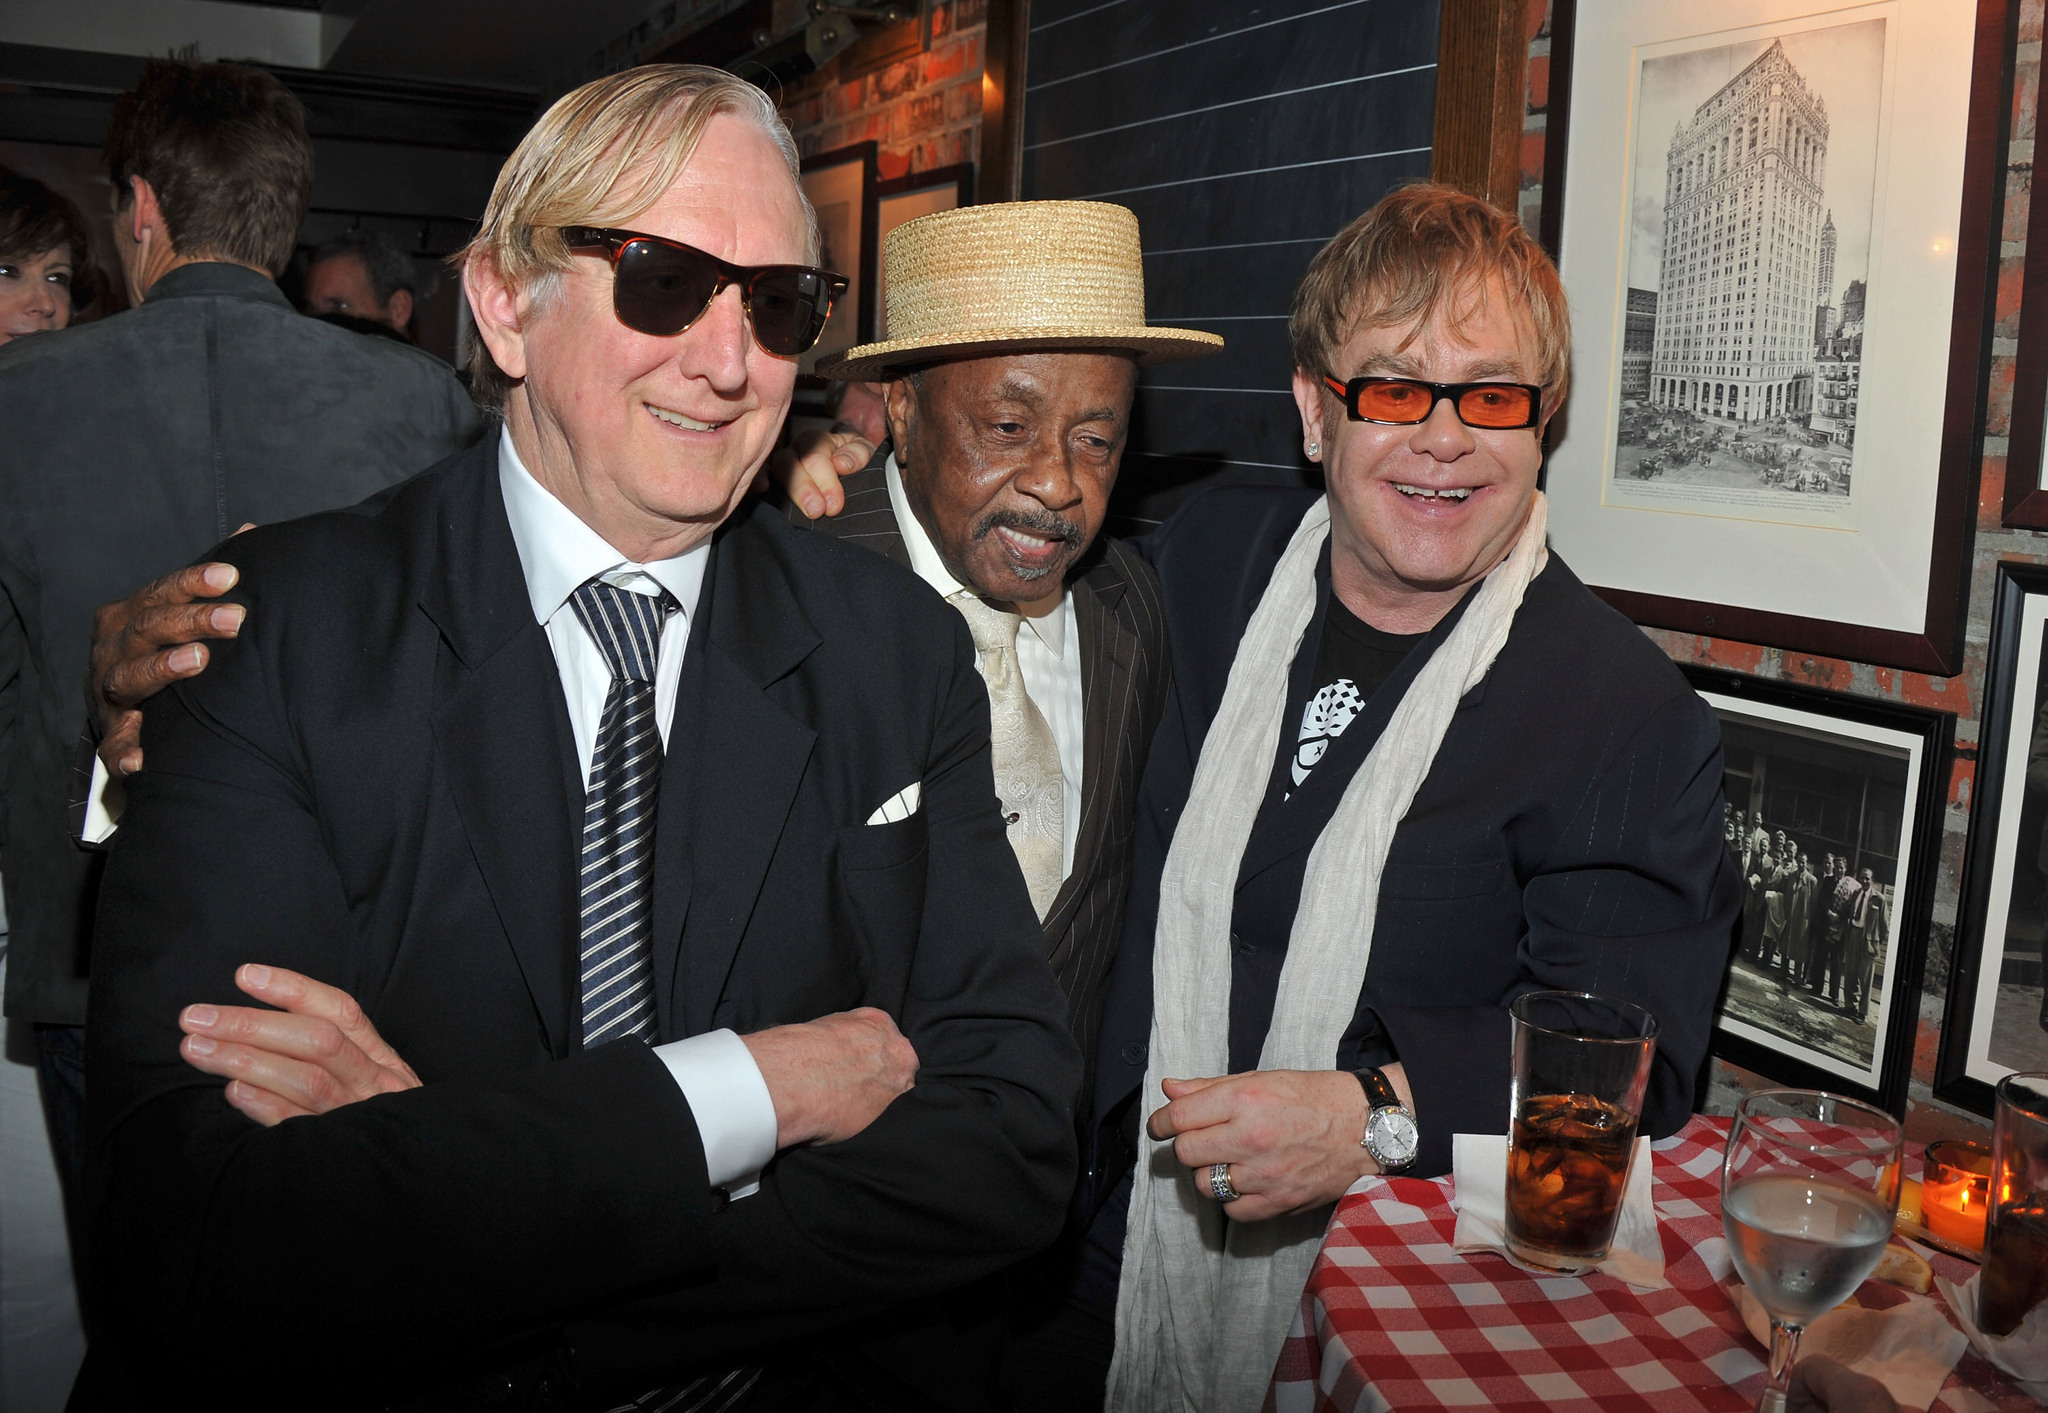 Elton John and T Bone Burnett at event of The Union (2011)